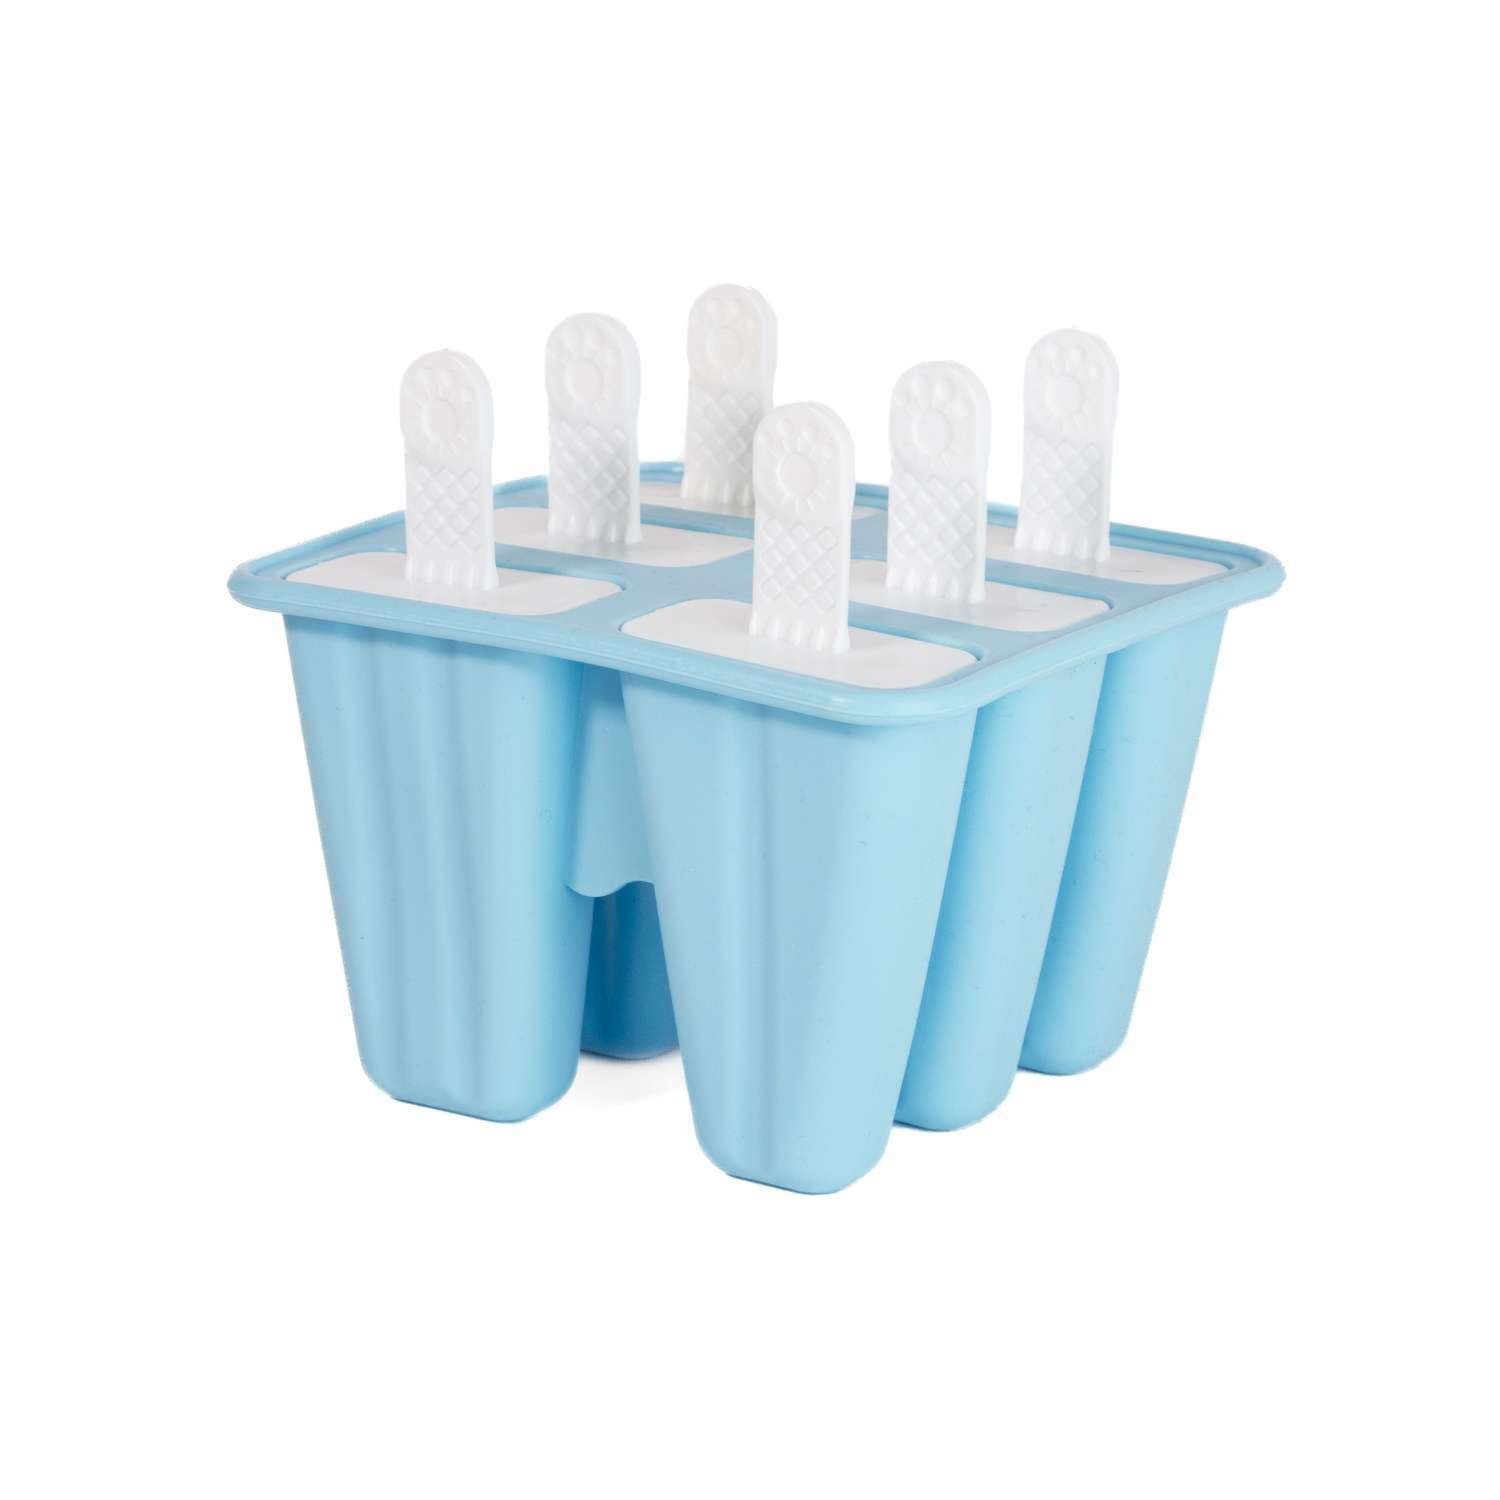 Intirilife Eisform, Silikon Eisform mit 6 Mulden und Stil Blau